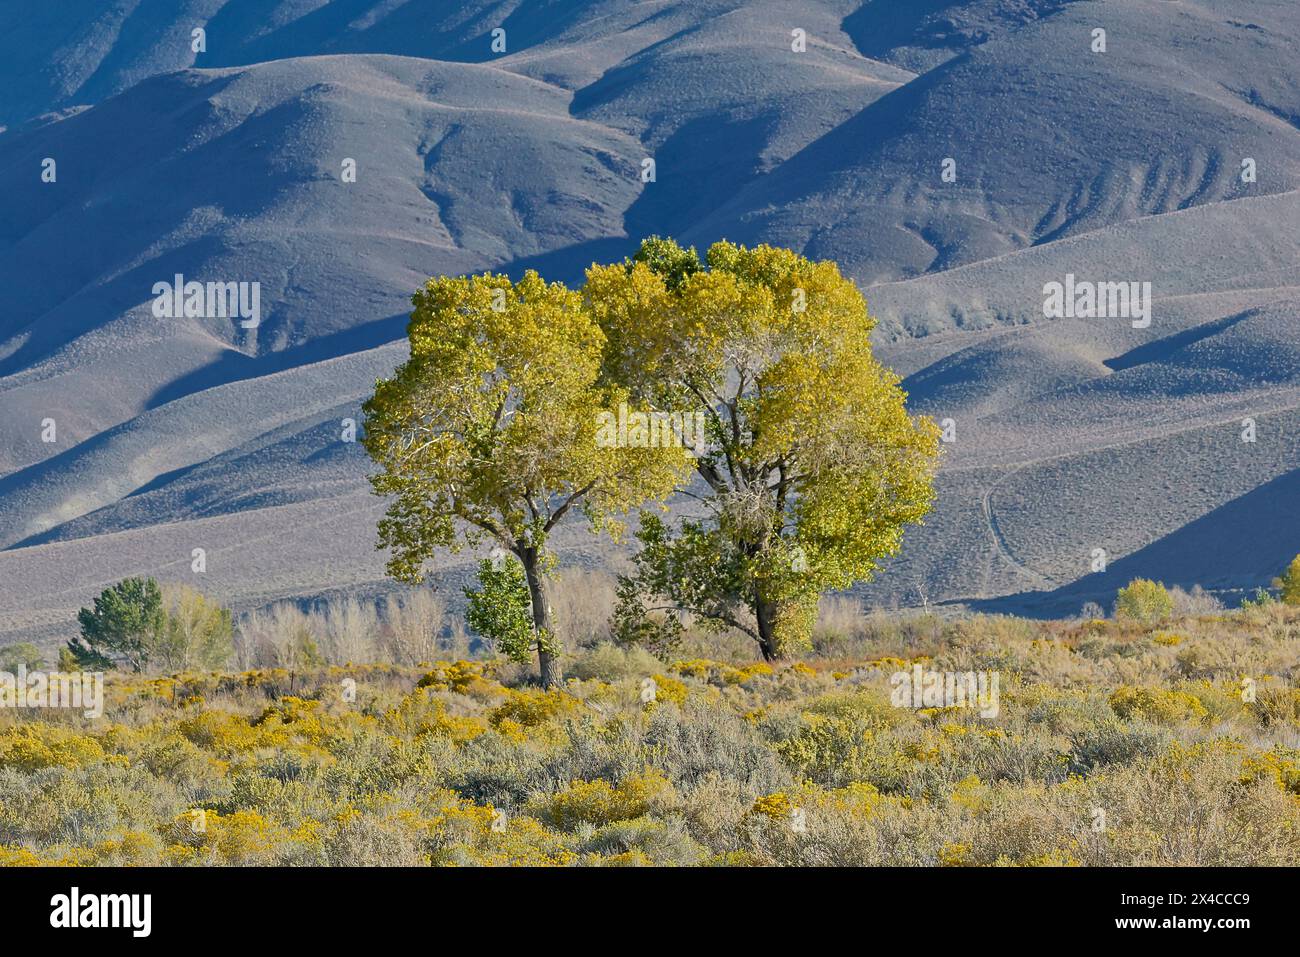 États-Unis, Californie, Bishop. Bishop Valley avec des lanières fleuries en automne et des arbres de cotonnier. Banque D'Images